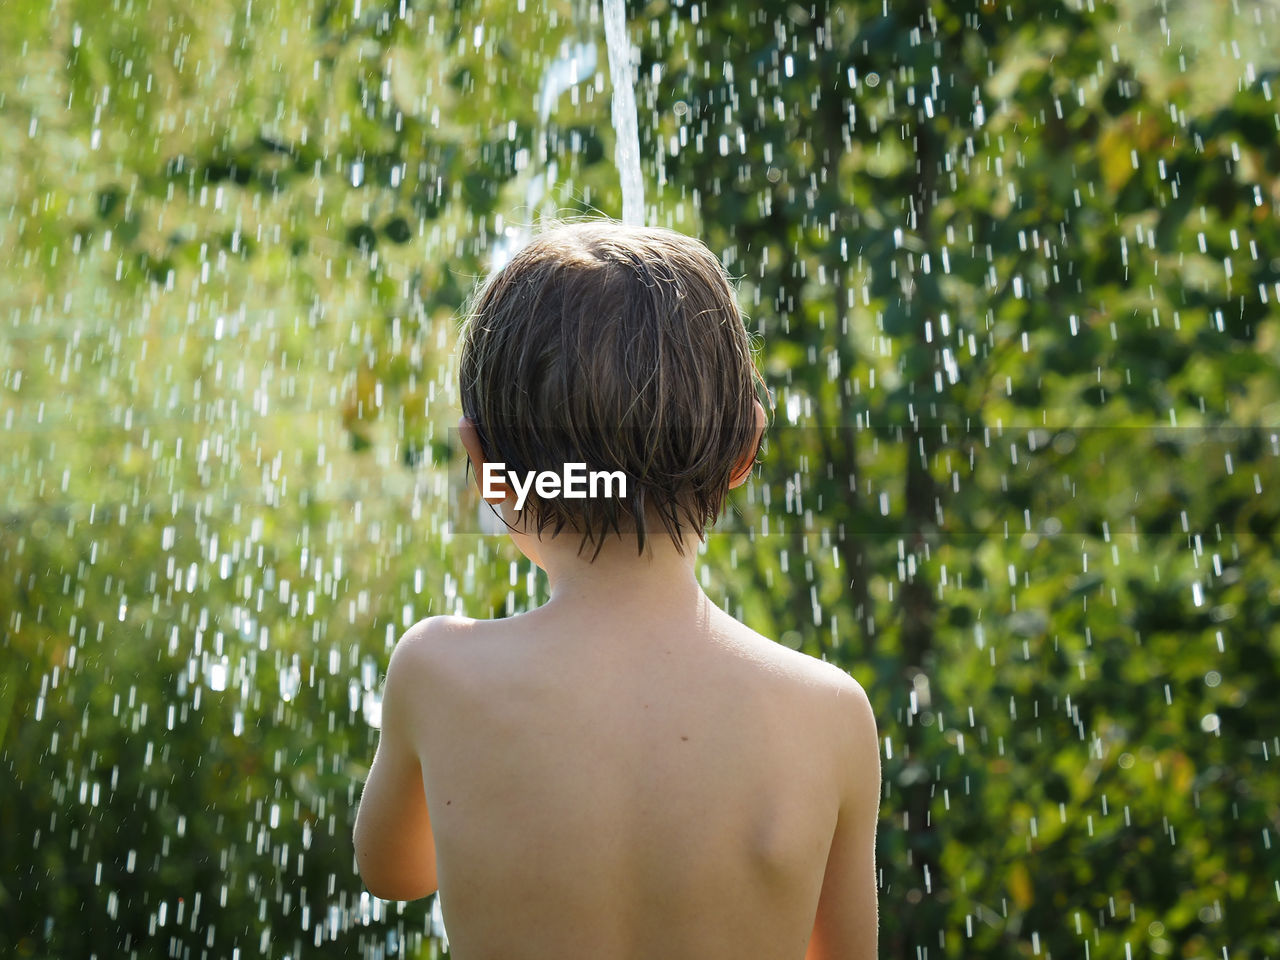 Boy under shower in garden